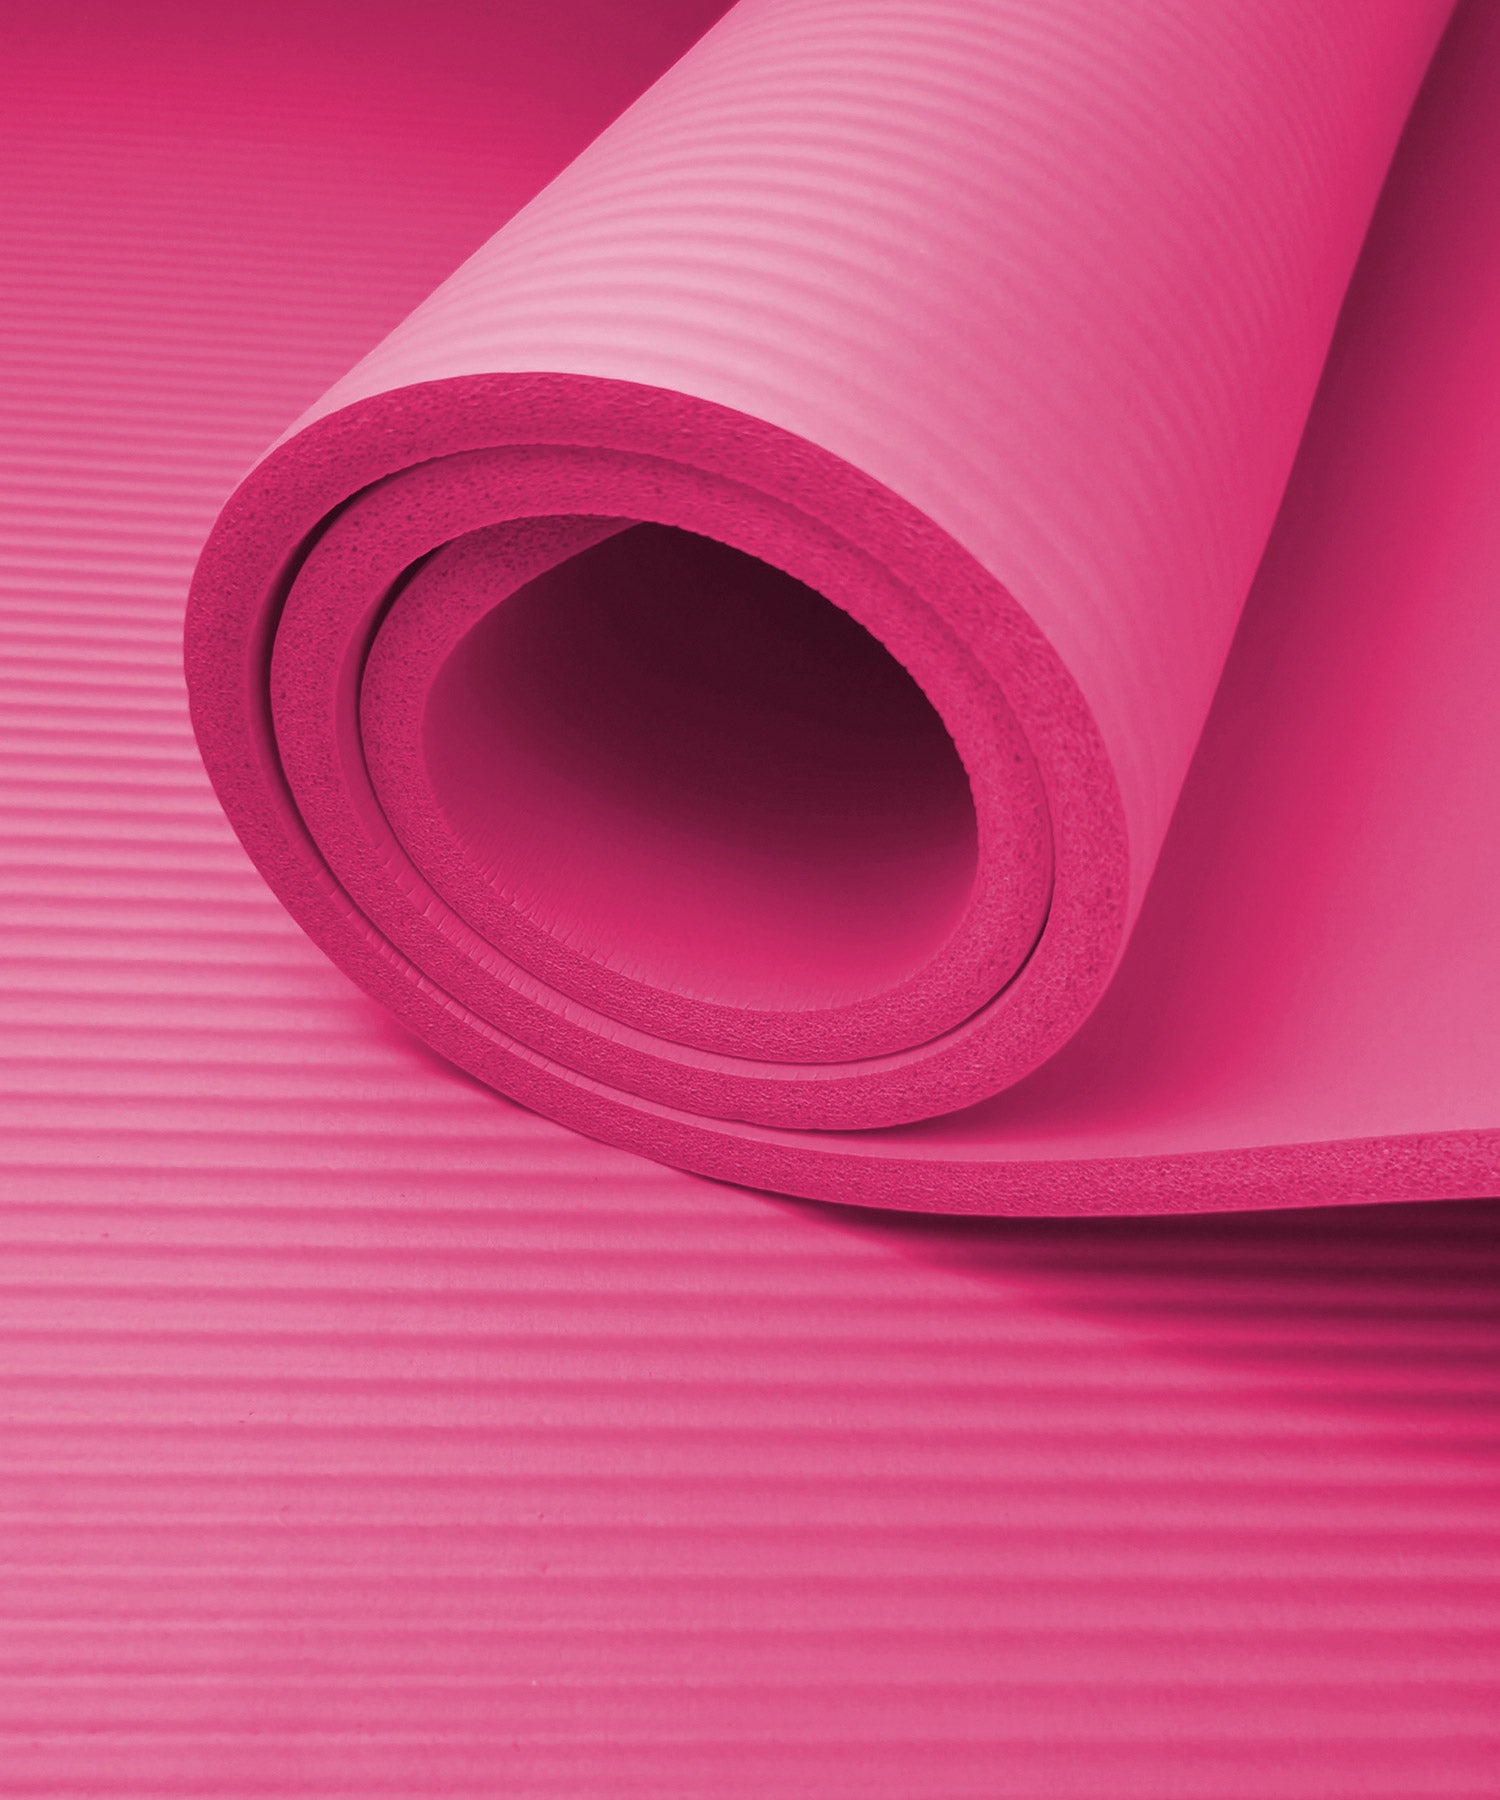 Yoga Direct Classic Yoga Mat - Pink (3mm)